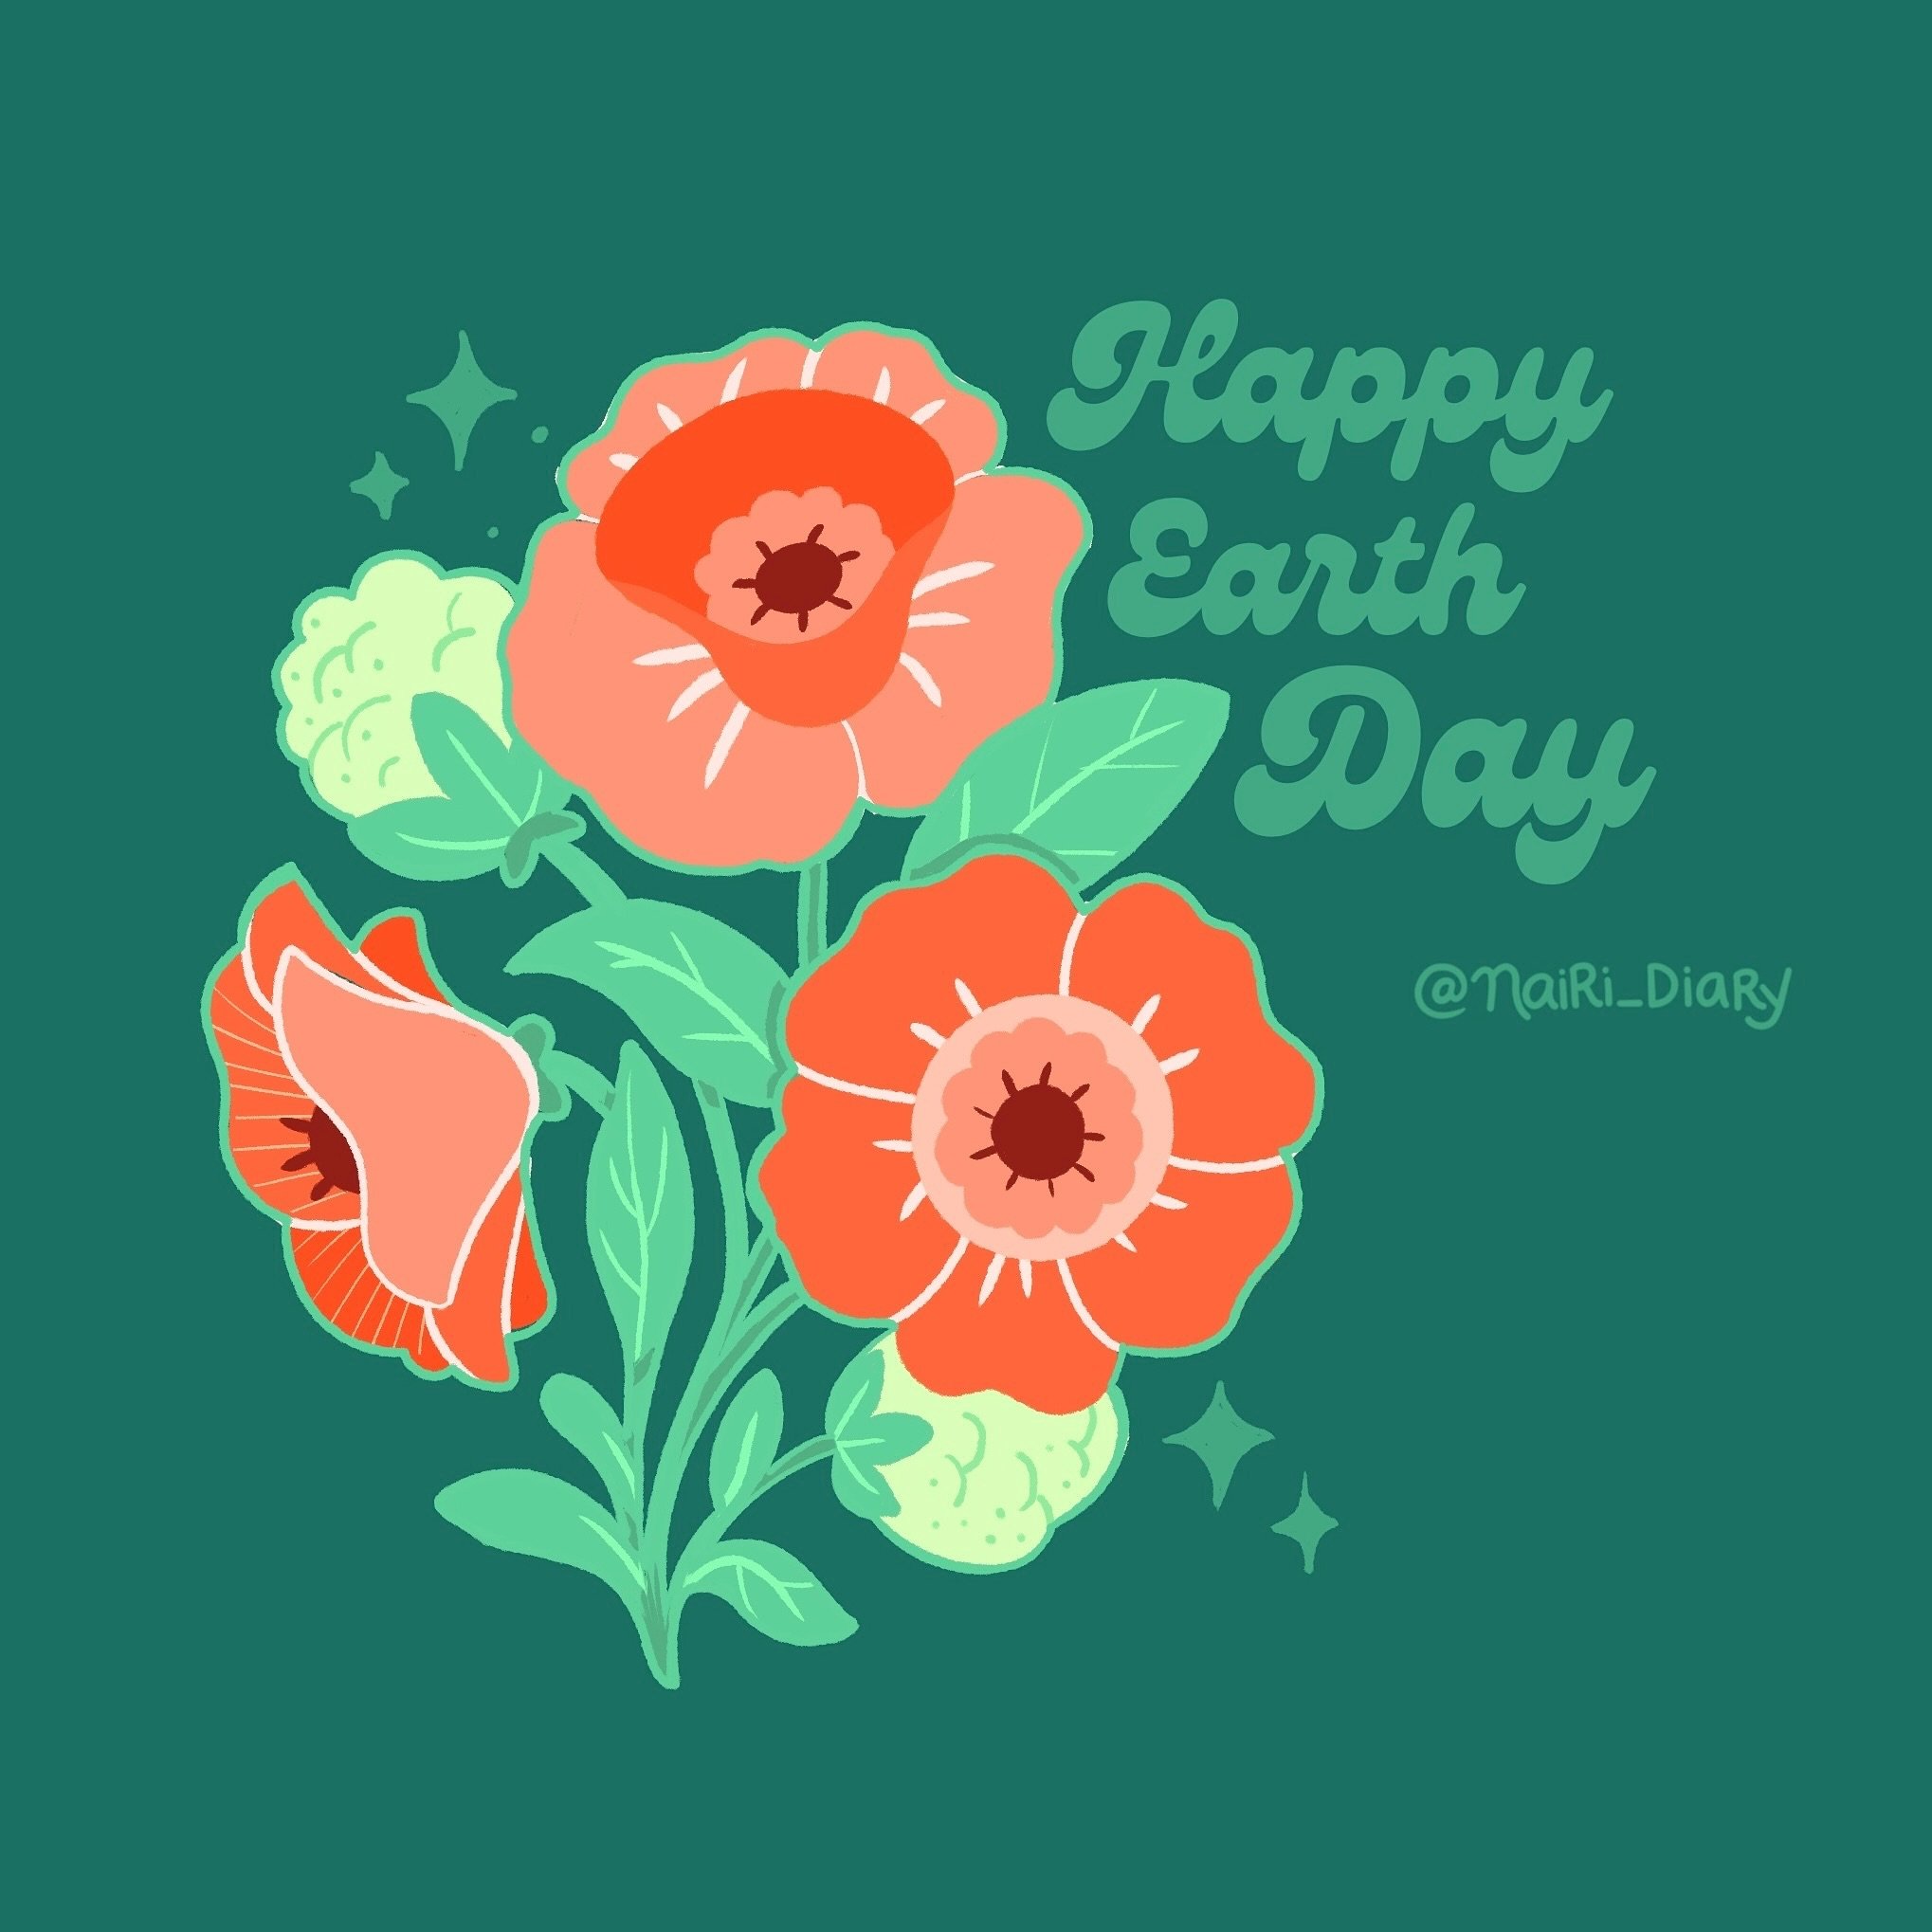 Happy Earth Day 🌎🌸🍃🌳
#happyearthday